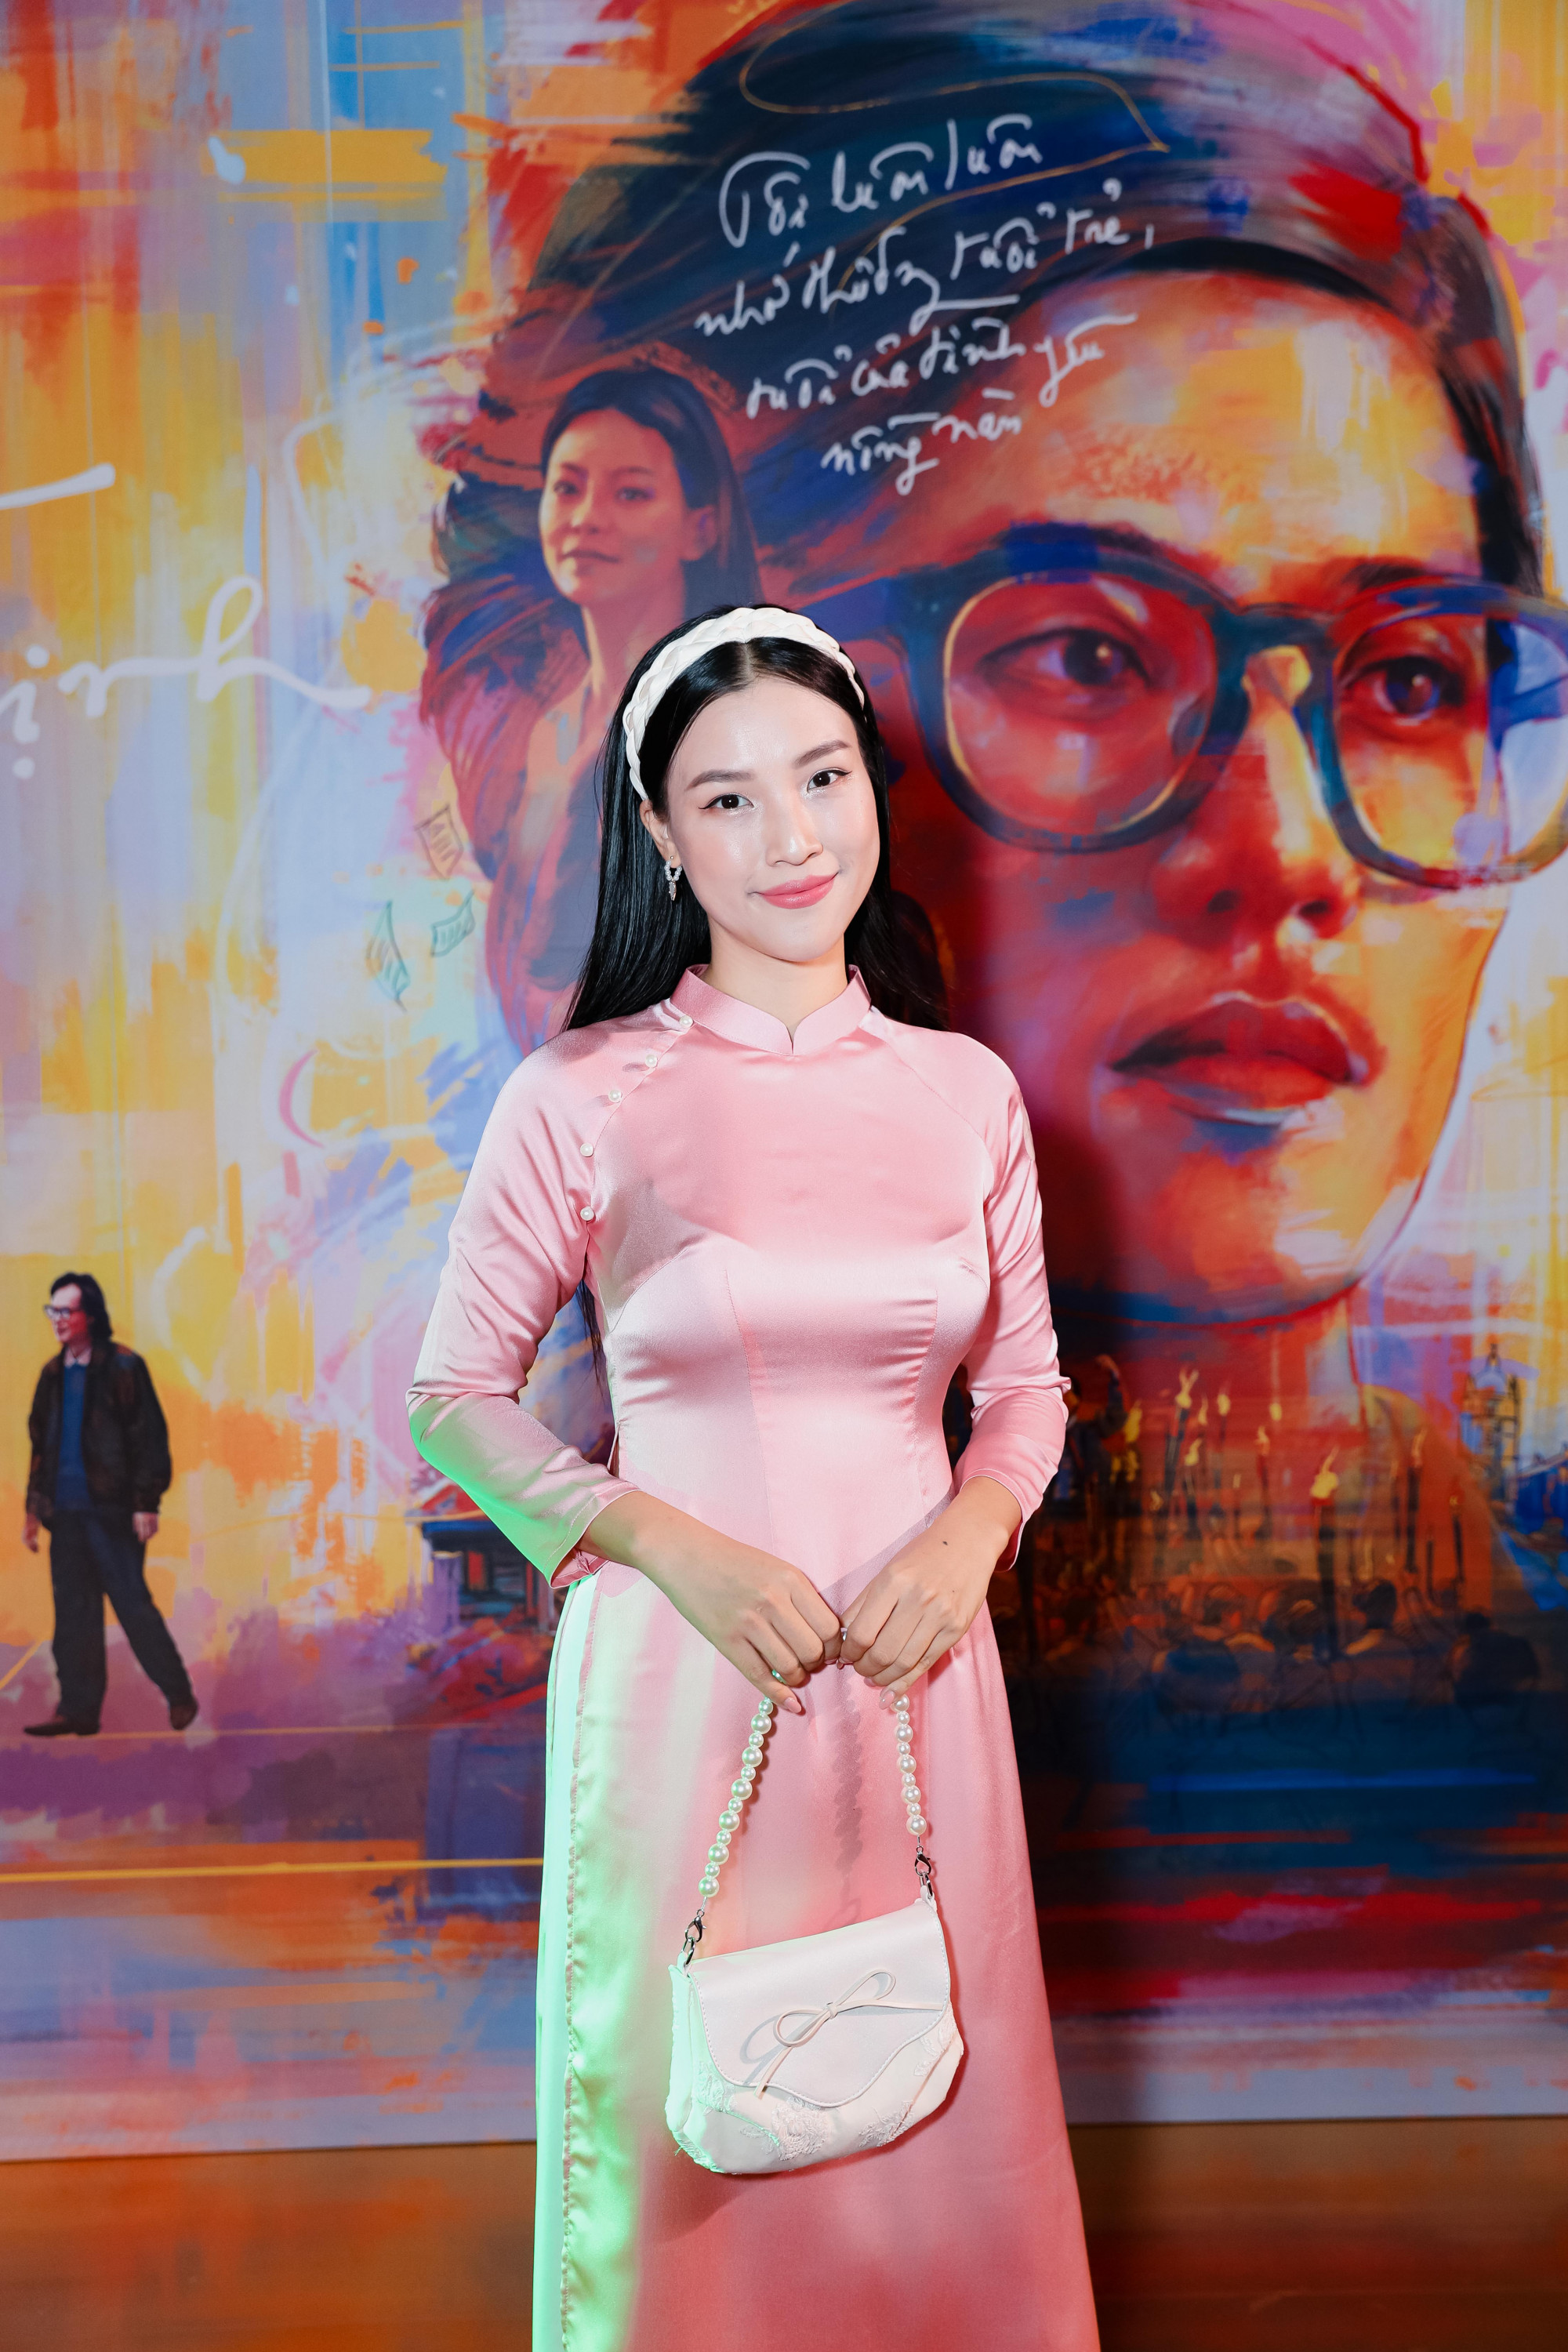 Bên cạnh Nhã Phương, MC Hoàng Oanh cũng ghi điểm trong bộ áo dài hồng nữ tính. Hậu ly hơn, nữ MC được khen ngợi ngày càng nhuộm sắc và liên ttucjvotham gia các hoạt động nghệ thuật bù đắp lại khoảng thời gian gián đoạn khi qua Singapore sinh sống.